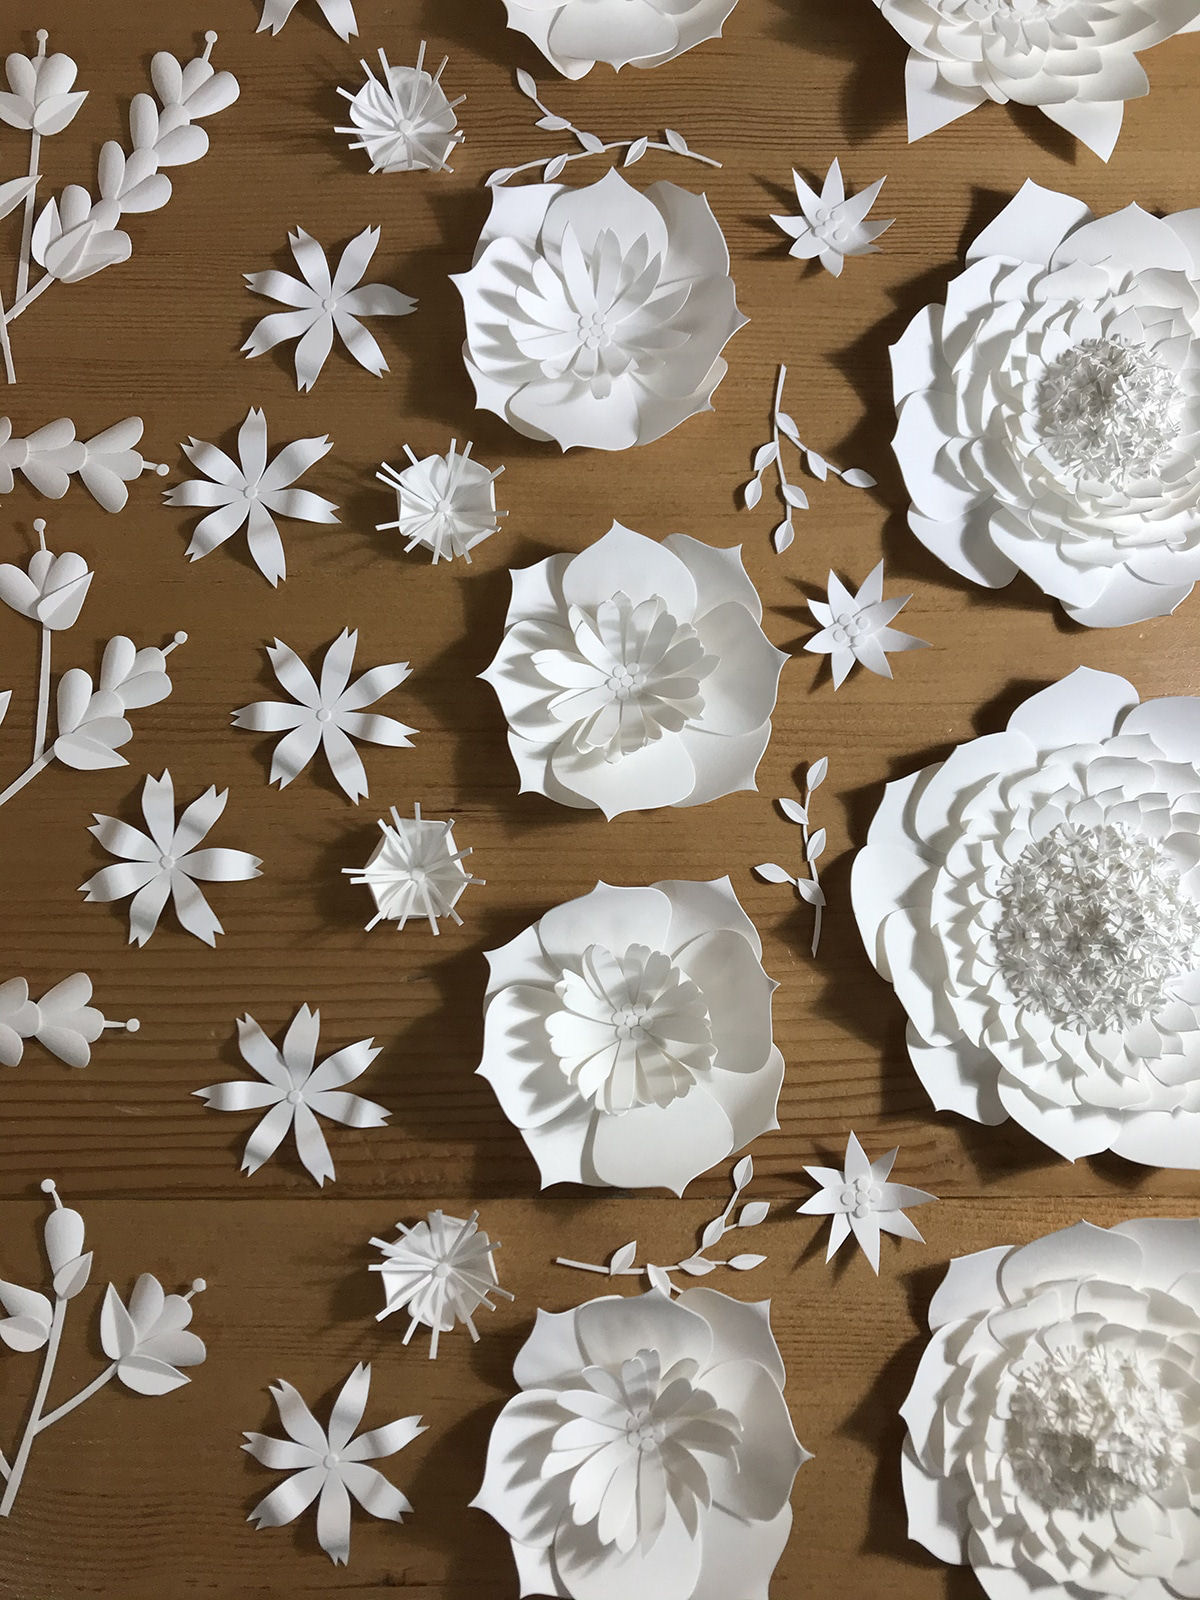 Artista cria 'jardins' exuberantes com flores de papel caprichosamente cortadas 07